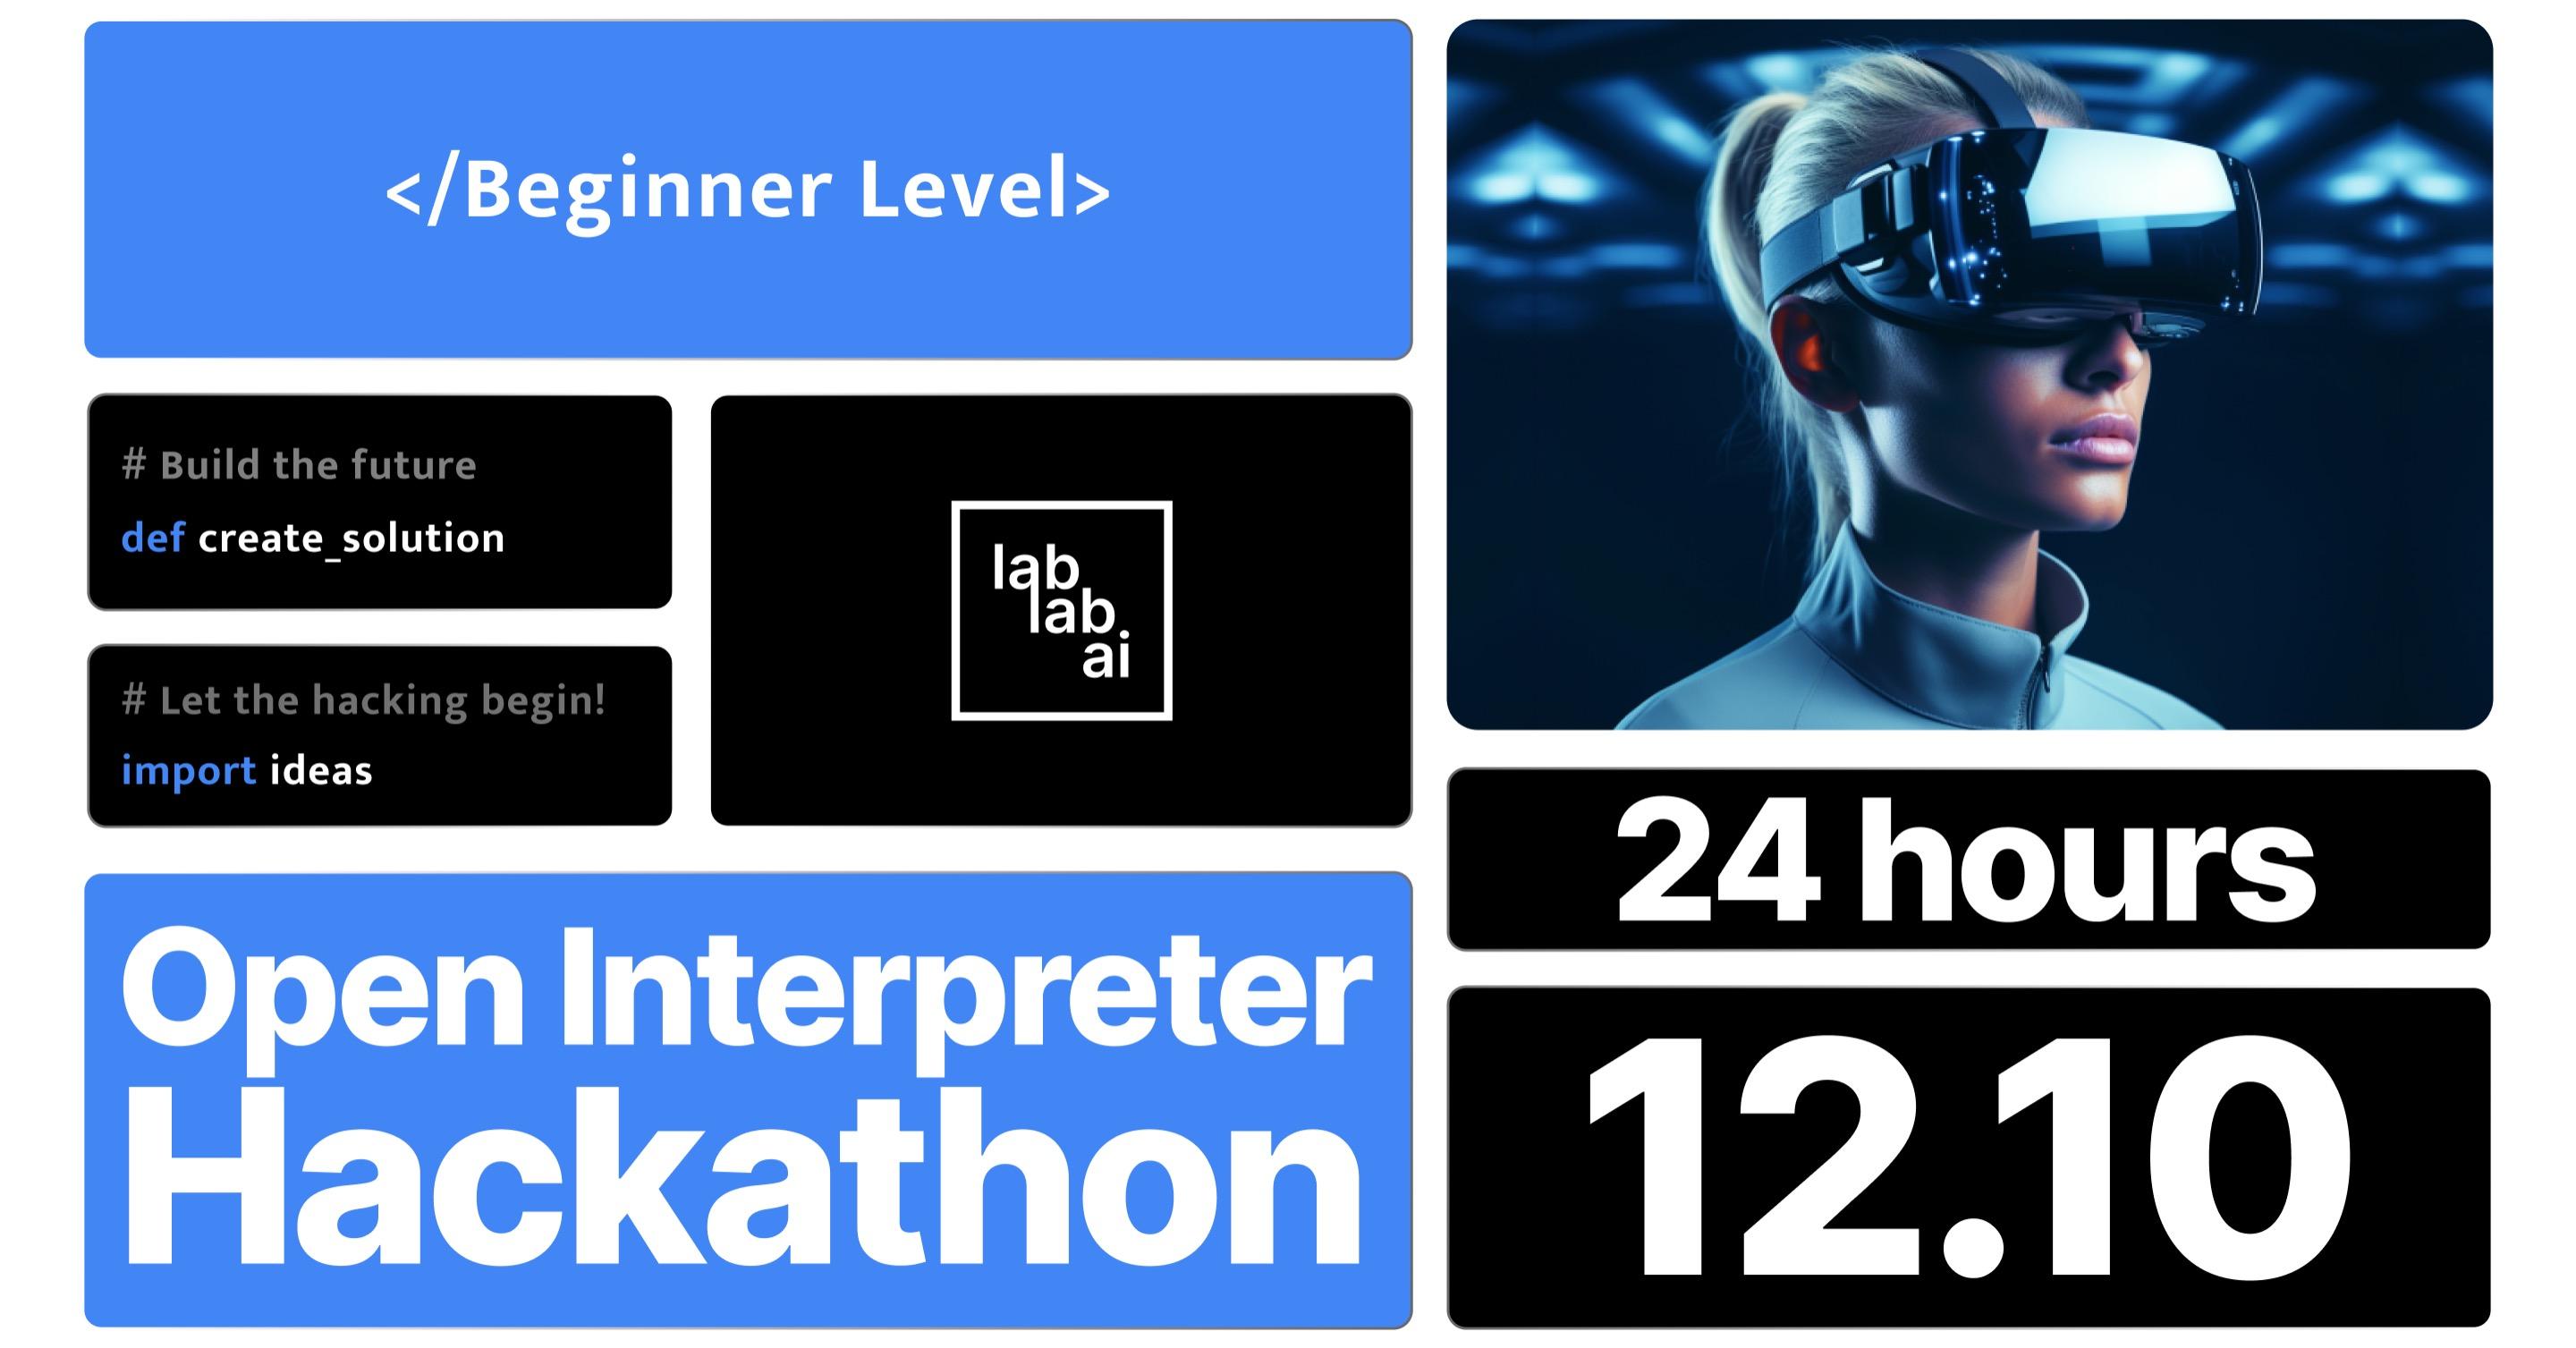 Open Interpreter Hackathon image